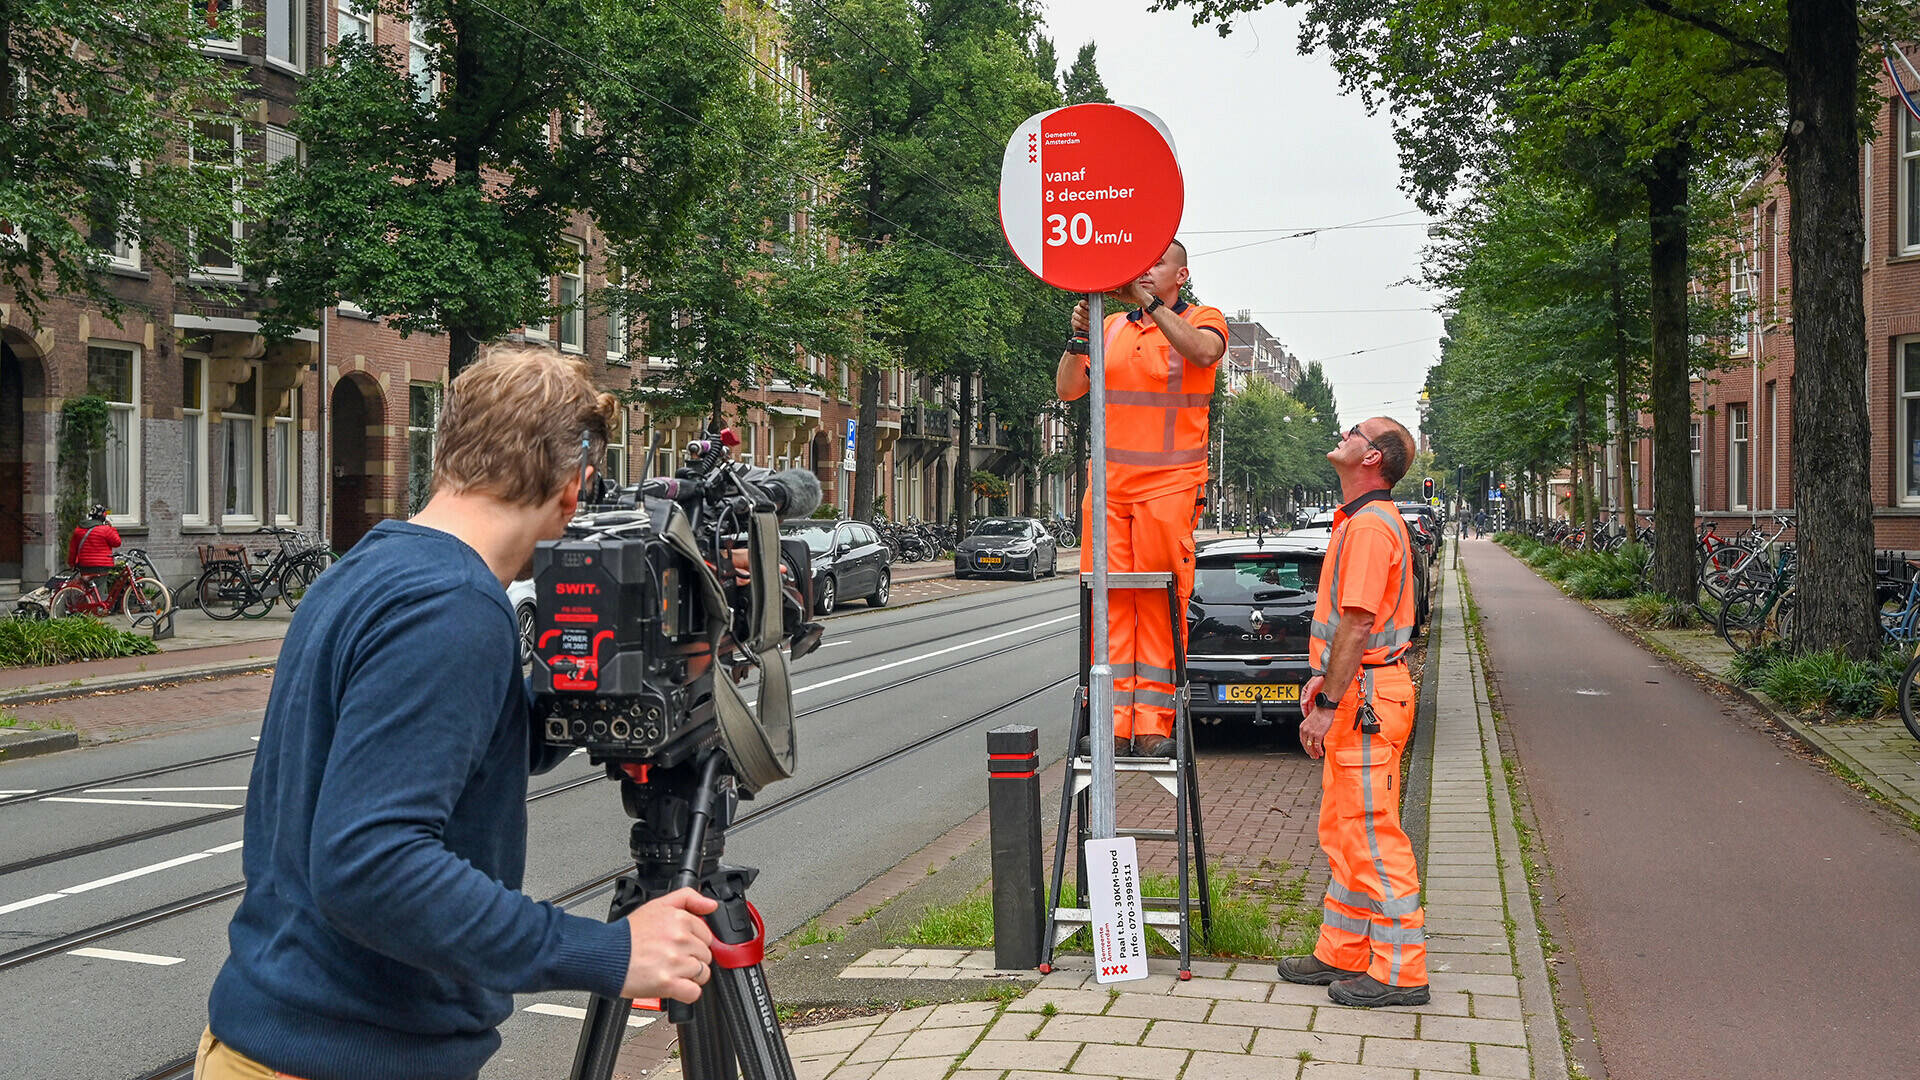 Medewerkers van de gemeente plaatsen een bord met 30 km per uur. Op de voorgrond een cameraman